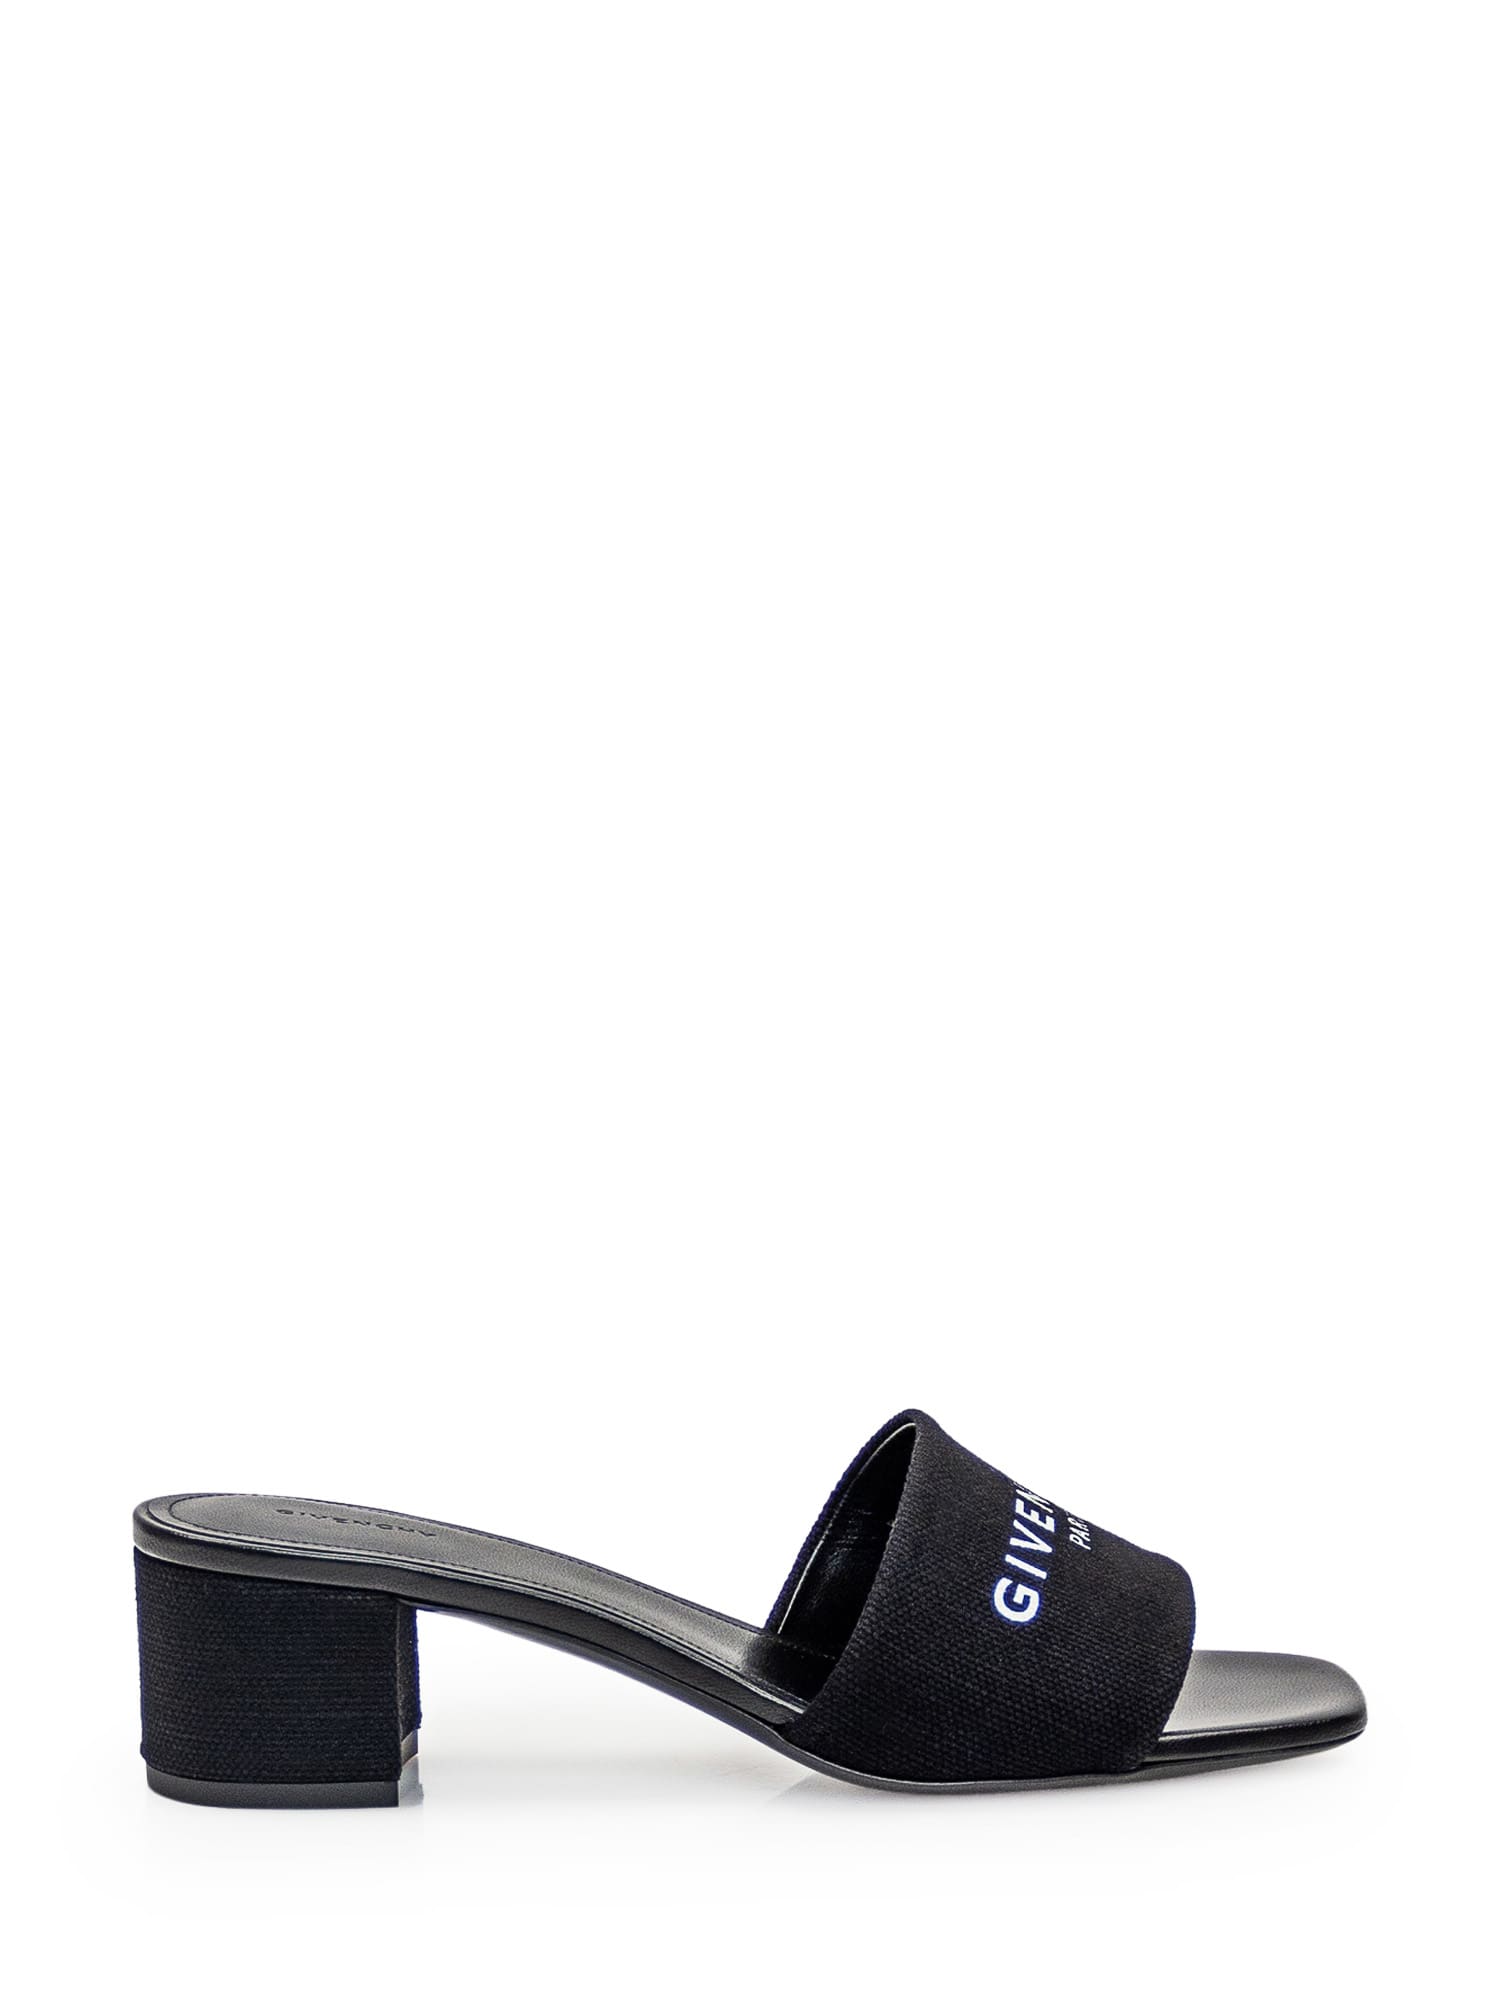 Shop Givenchy 4g Sandal In Black